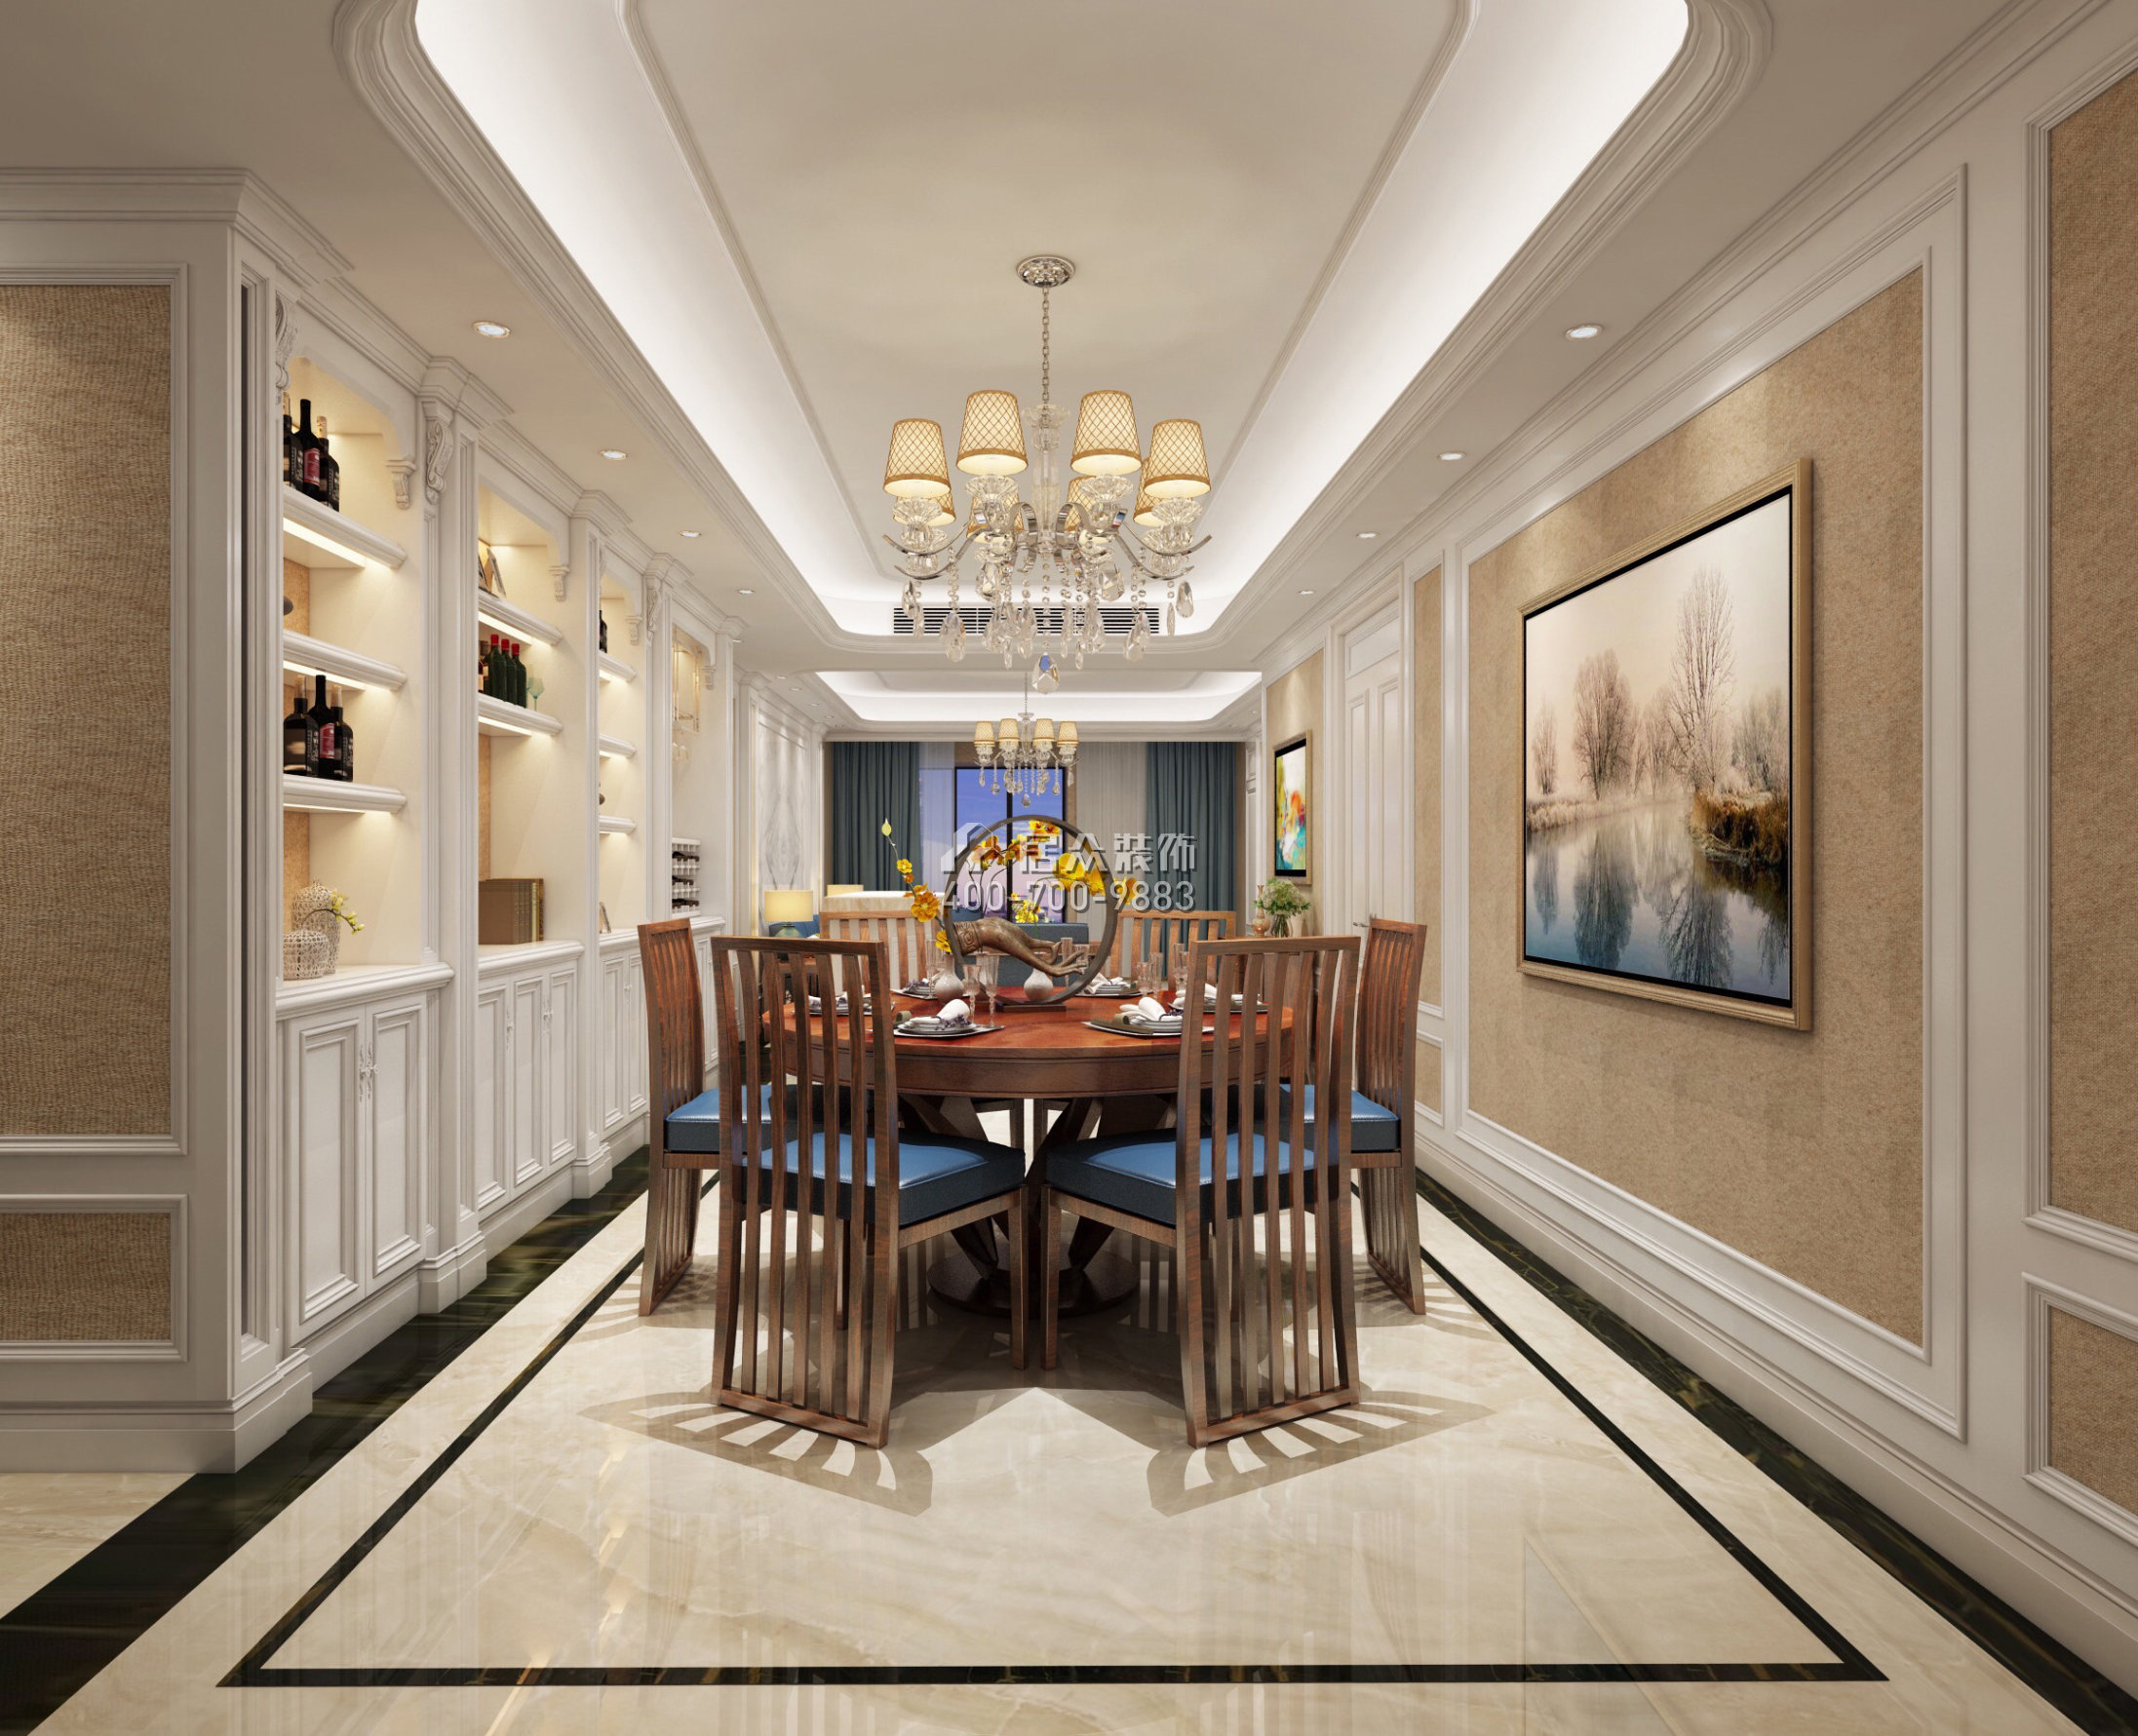 大康福盈门179平方米欧式风格平层户型餐厅装修效果图